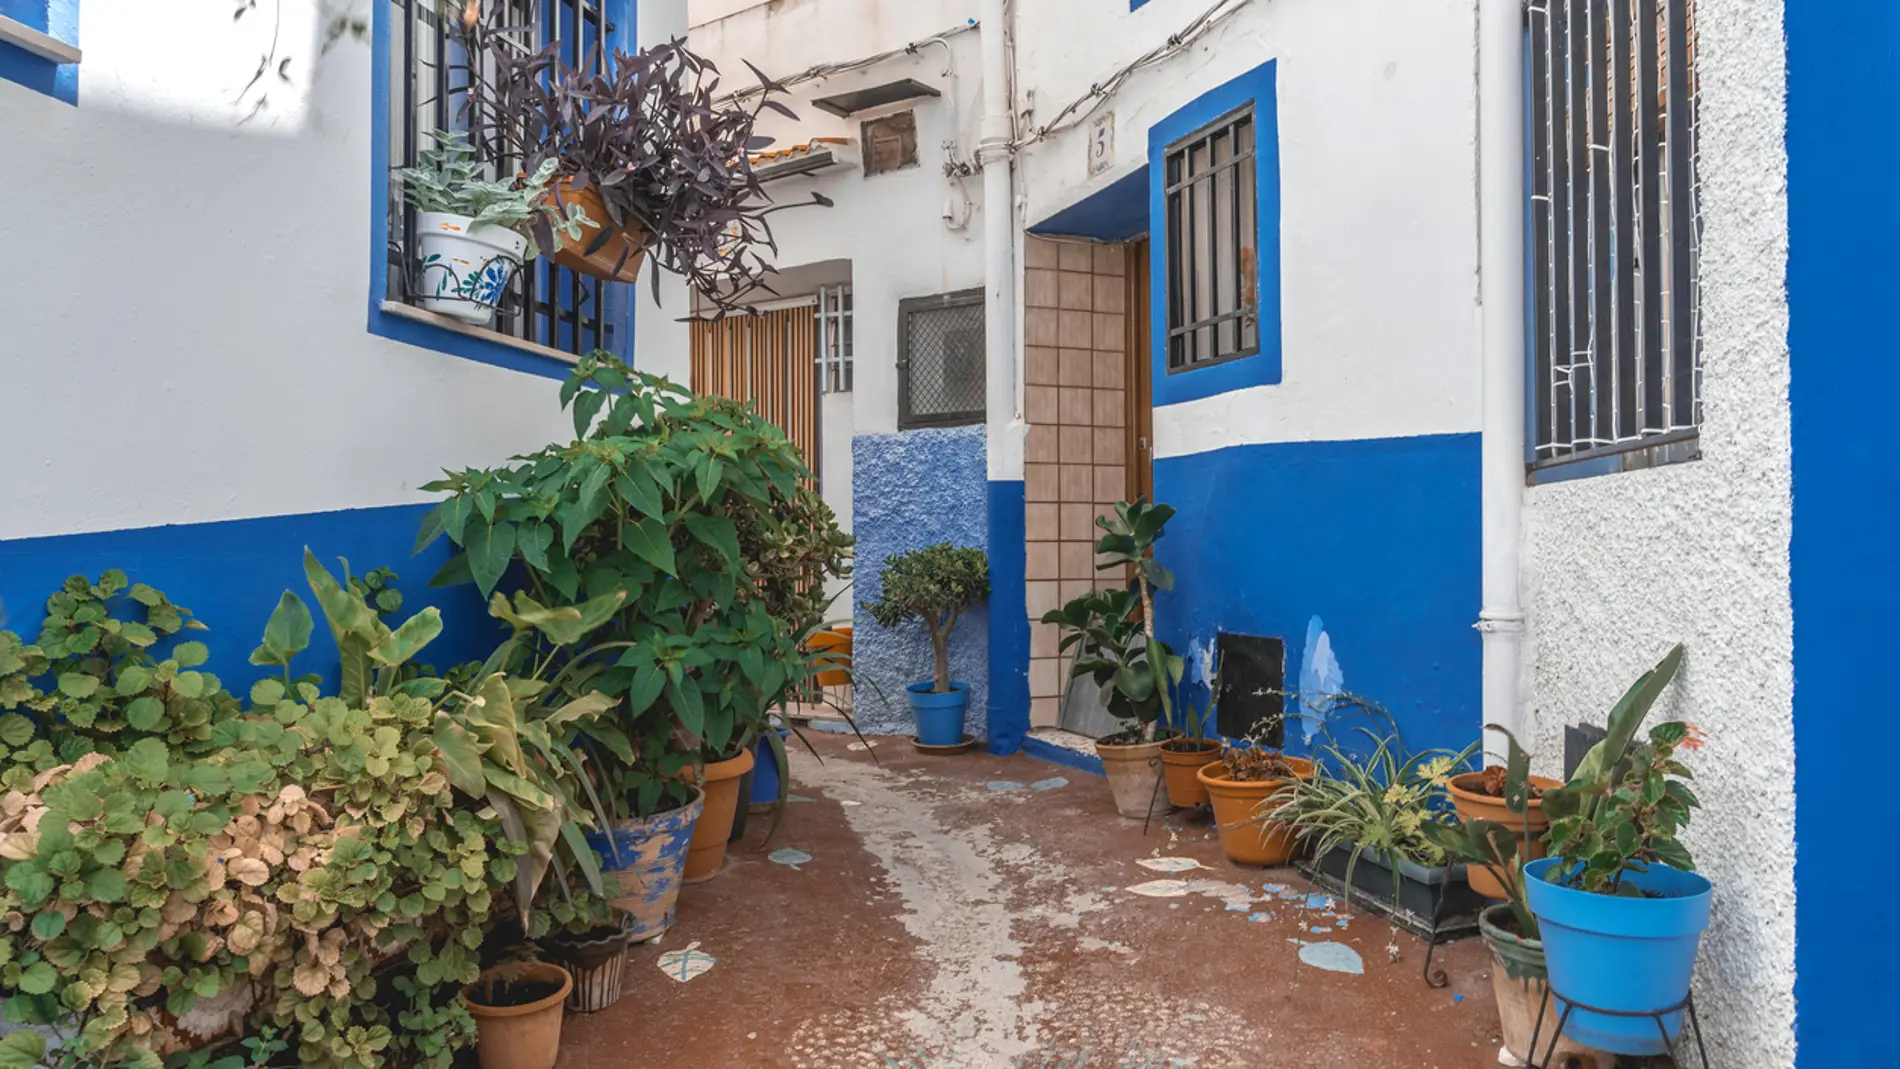 Chelva: El pueblo de Valencia que recuerda al pueblo azul de Marruecos